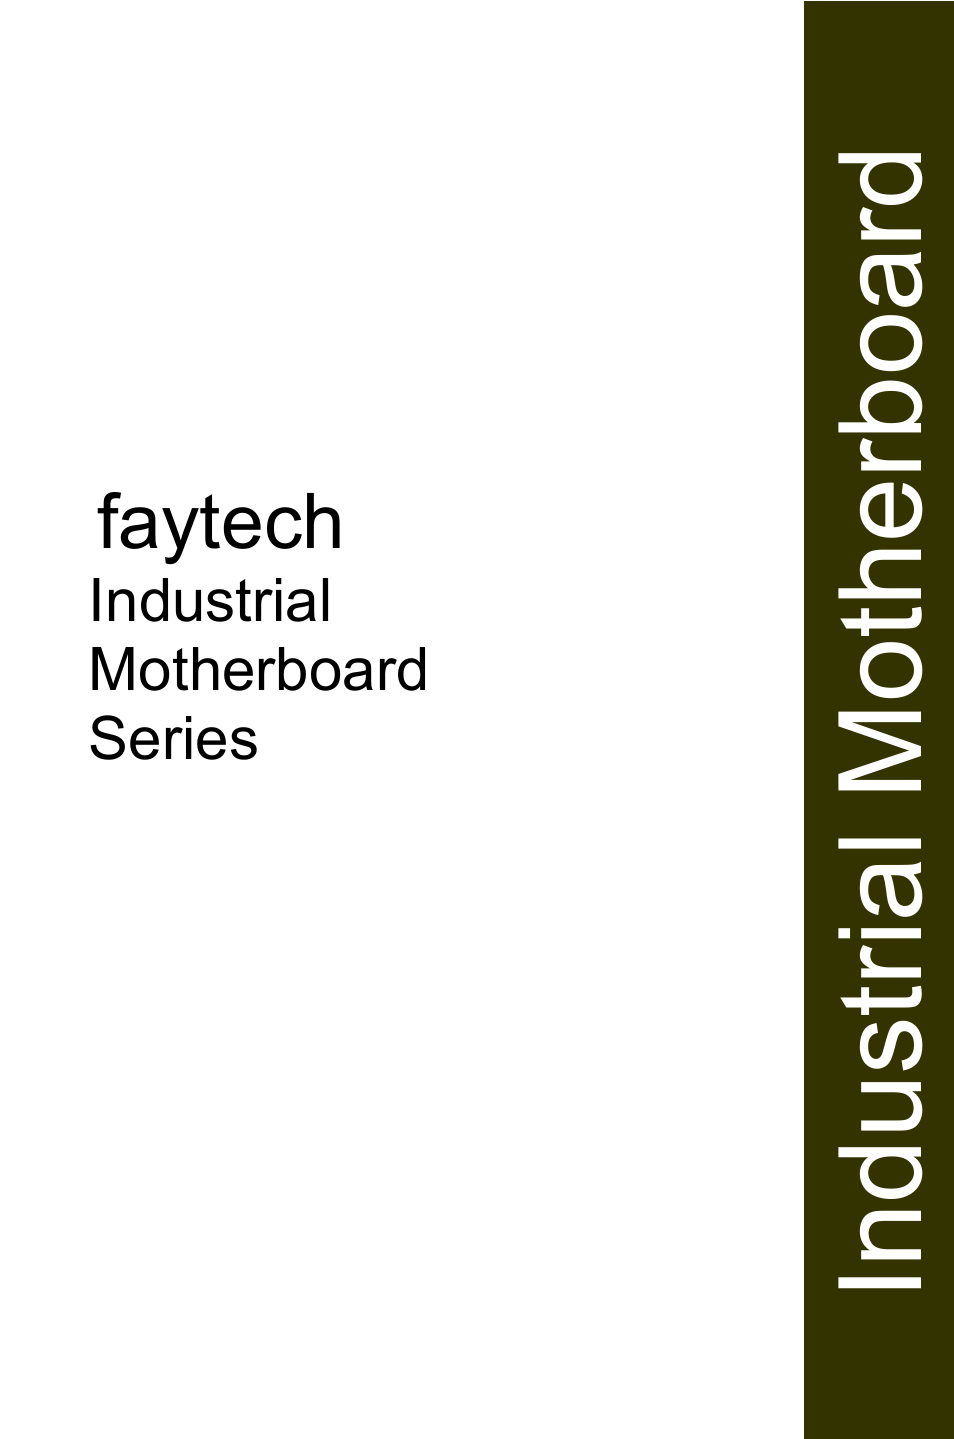 Industrial Motherboard Series